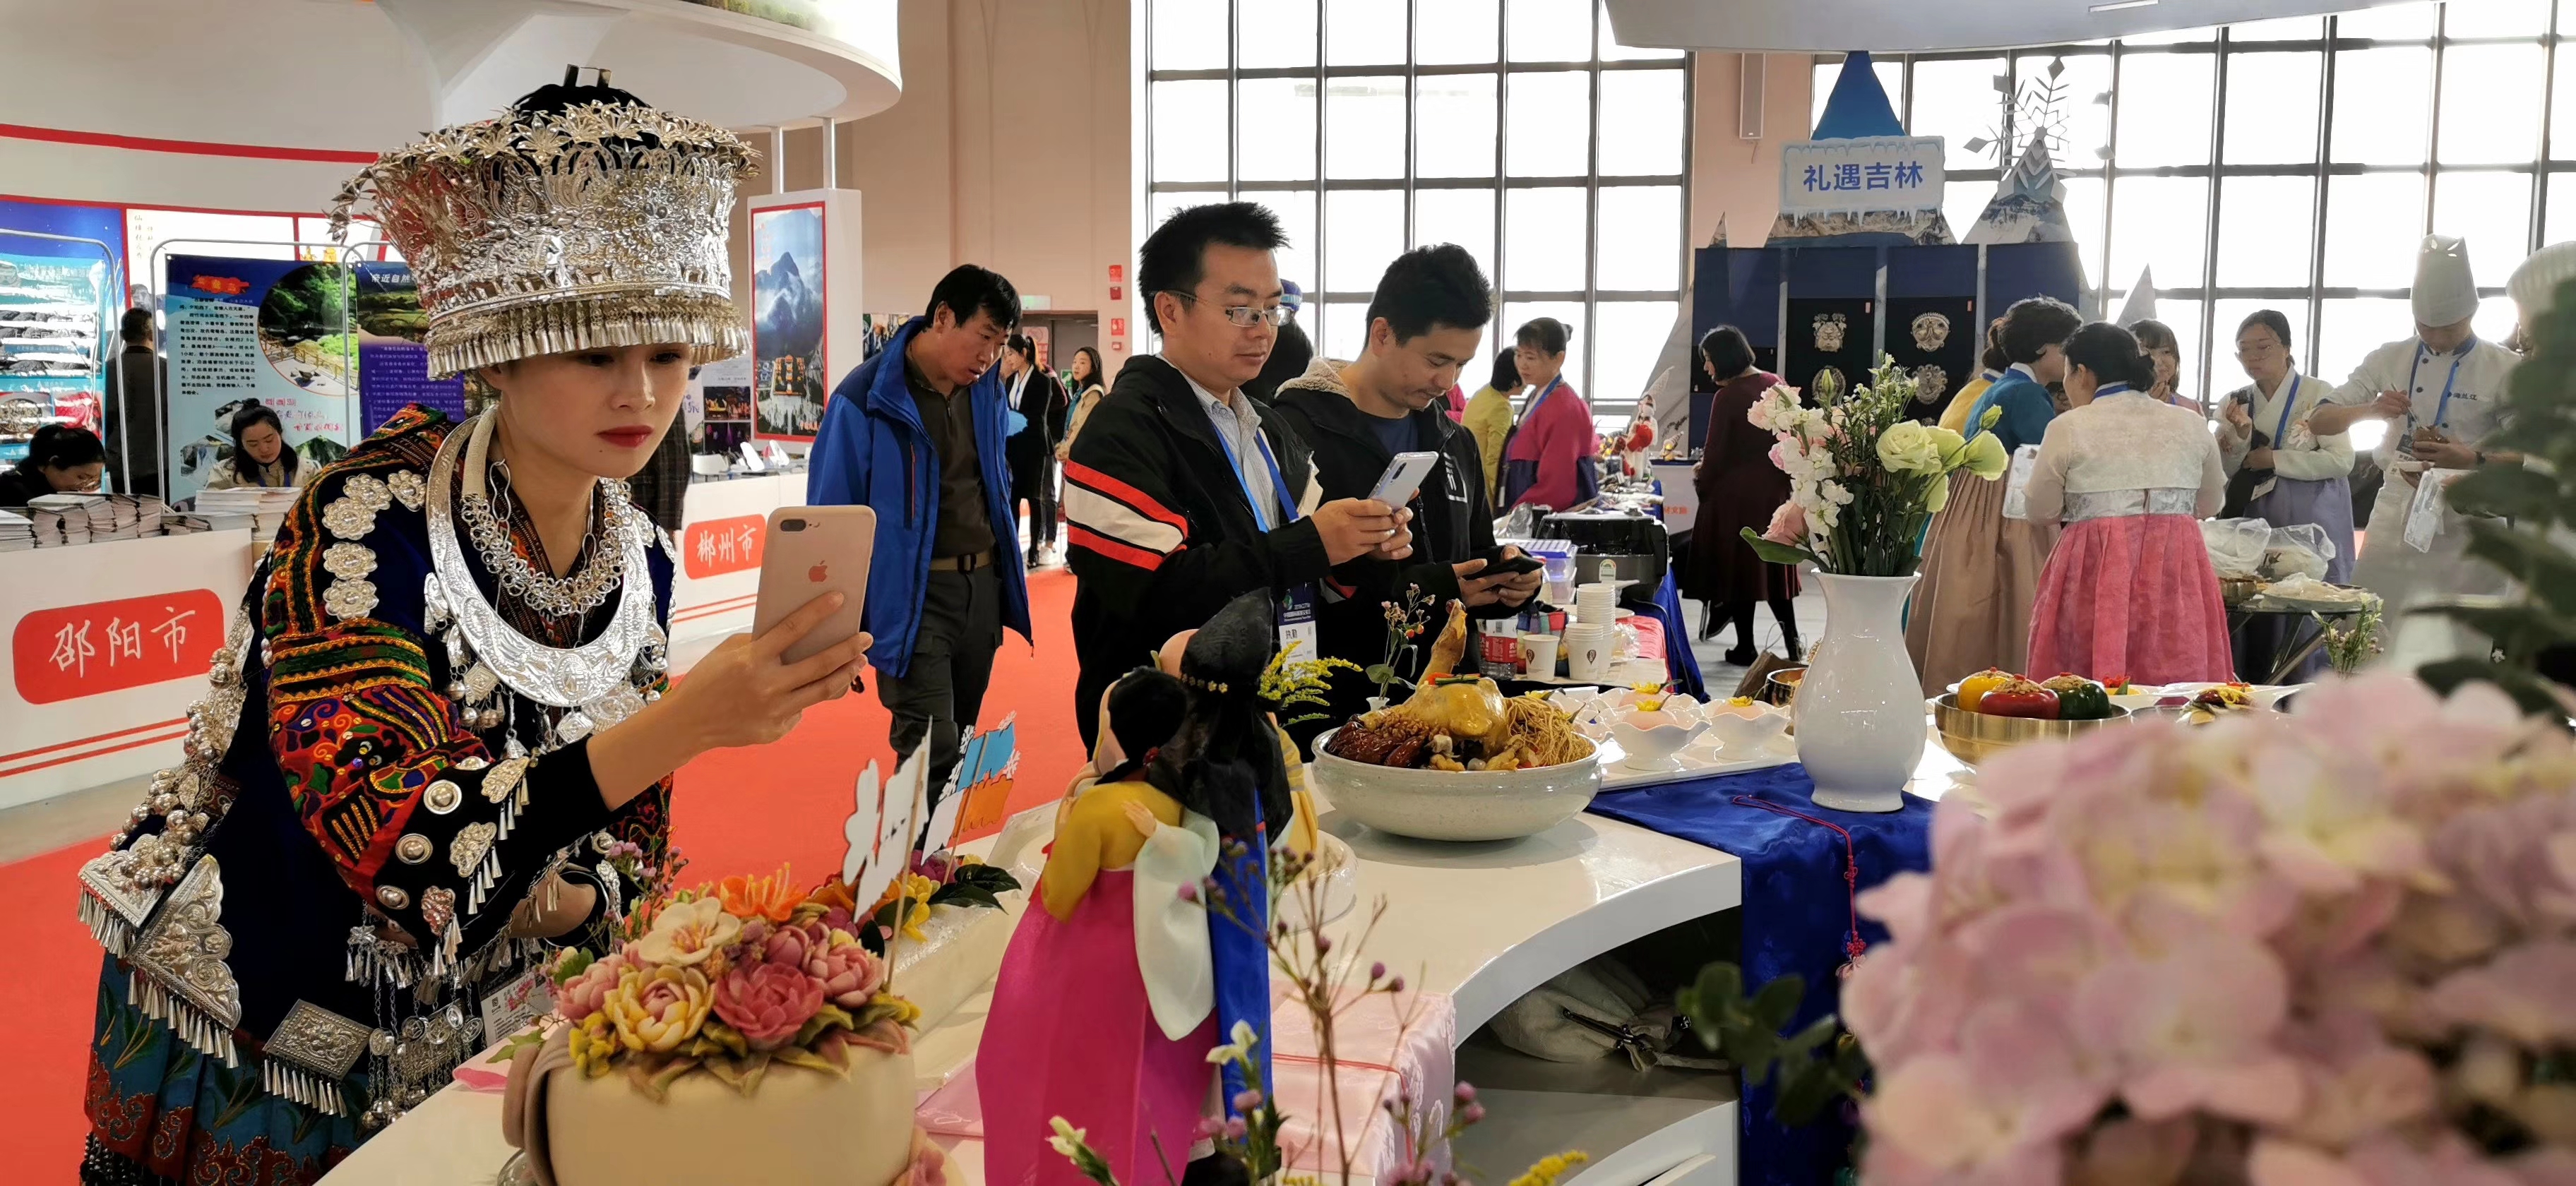 Делегация по демонстрации культуры и туризма провинции Цзилинь участвует в международной ярмарке туризма в Куньмине